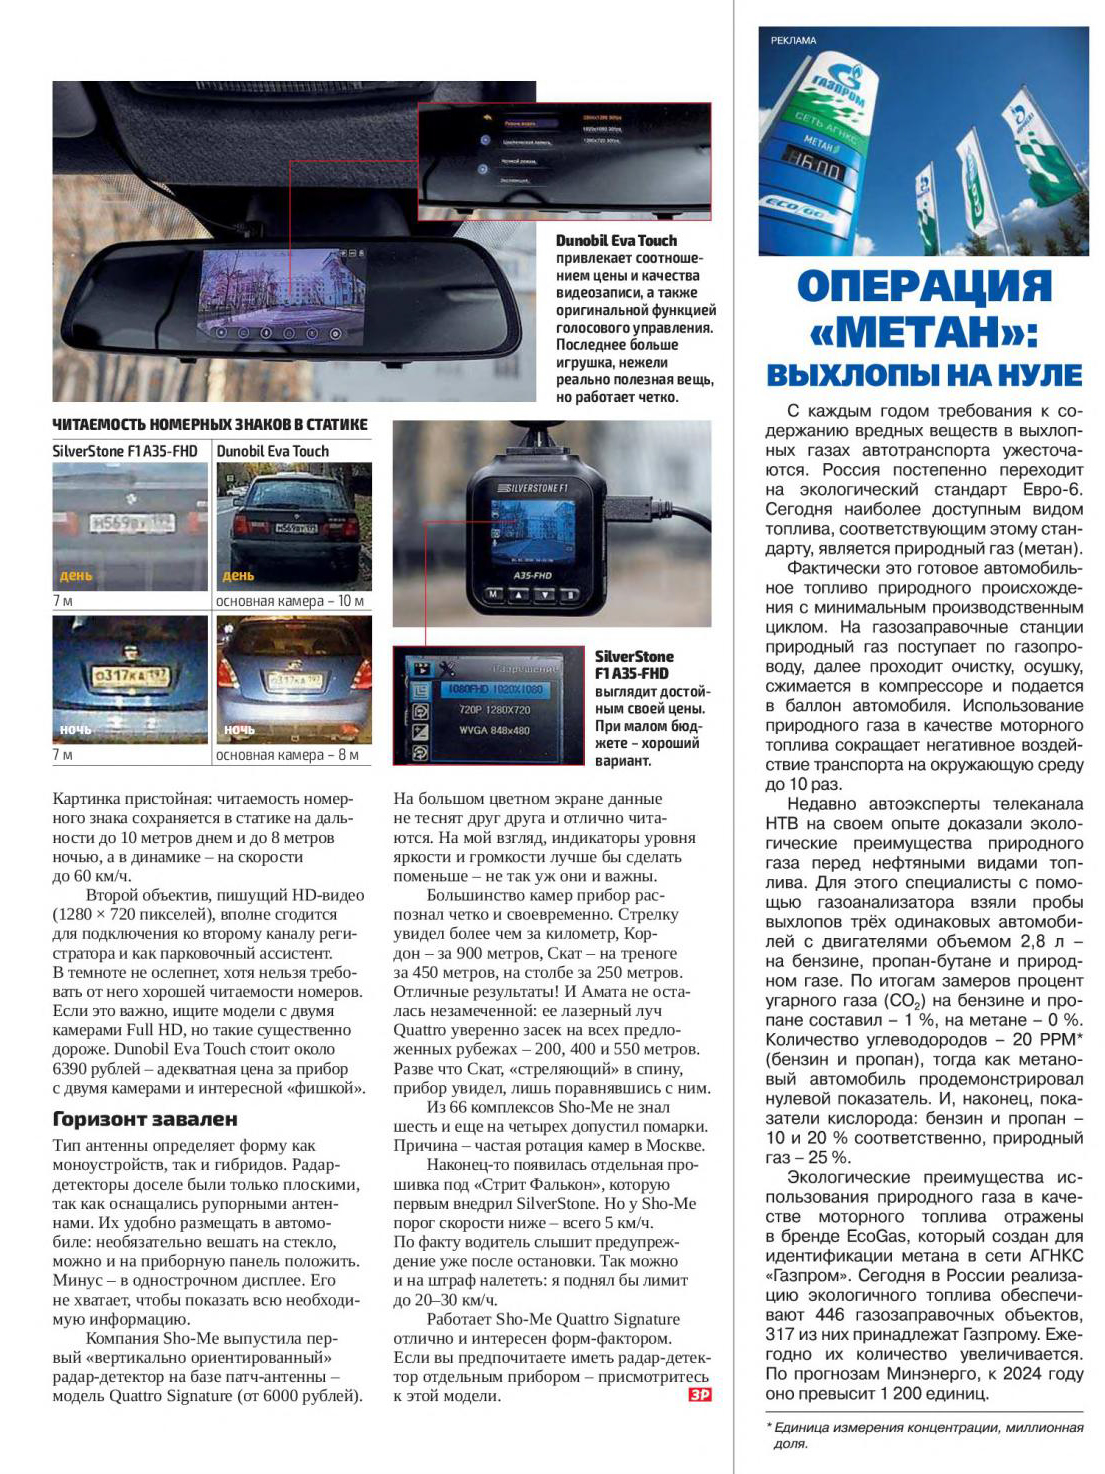 видеорегистратор SilverStone F1 A35-FHD в журнале За Рулём